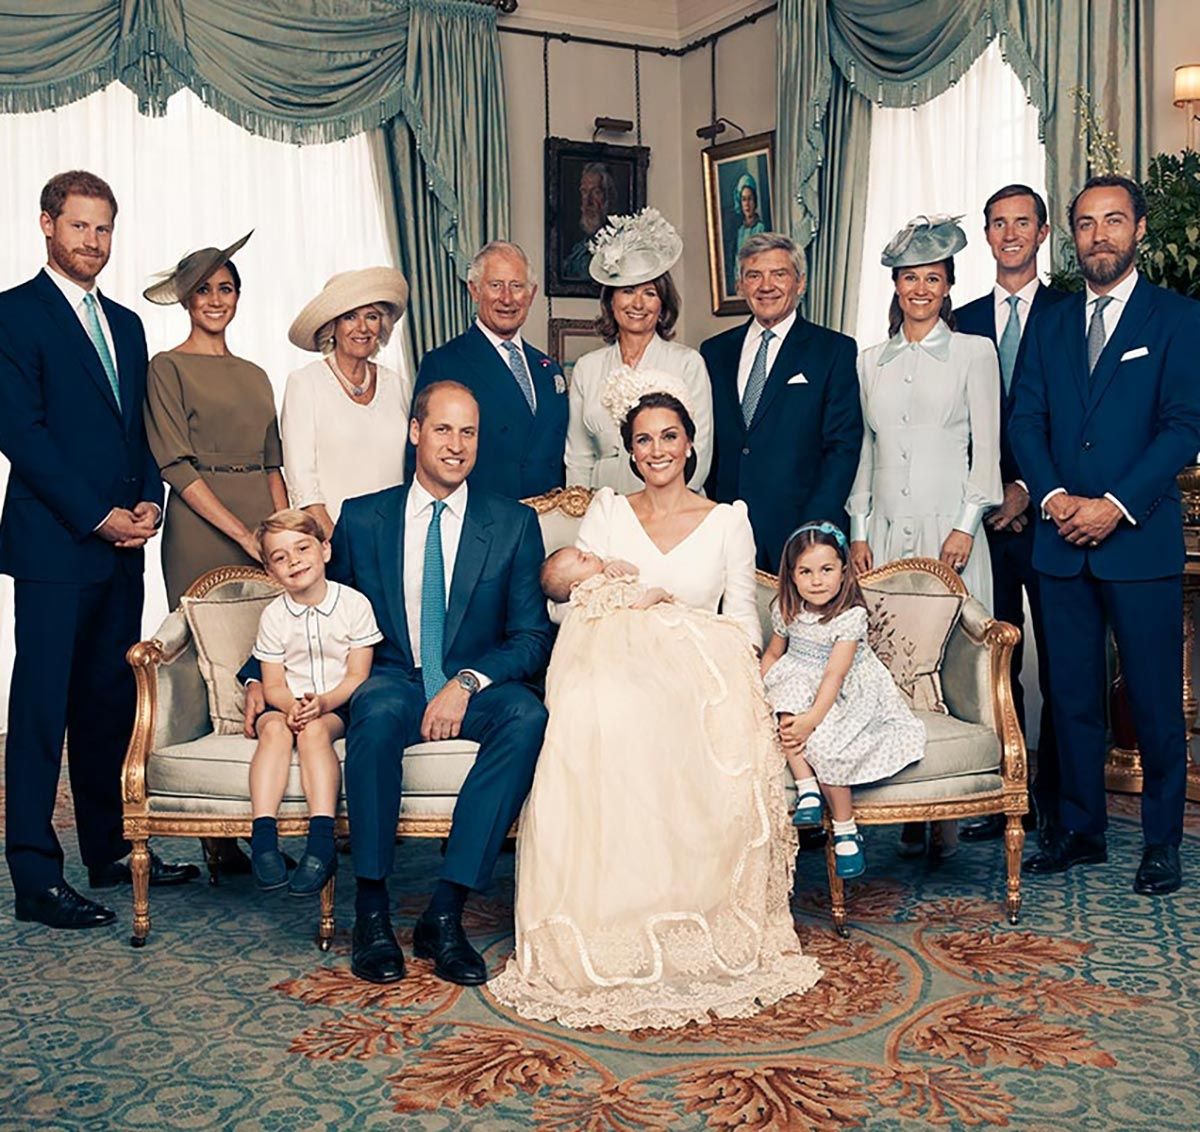 ルイ王子 シャーロット王女 ジョージ王子それぞれどう違う ロイヤルファミリーの歴代洗礼式公式ポートレートを徹底比較 ハーパーズ バザー Harper S Bazaar 公式